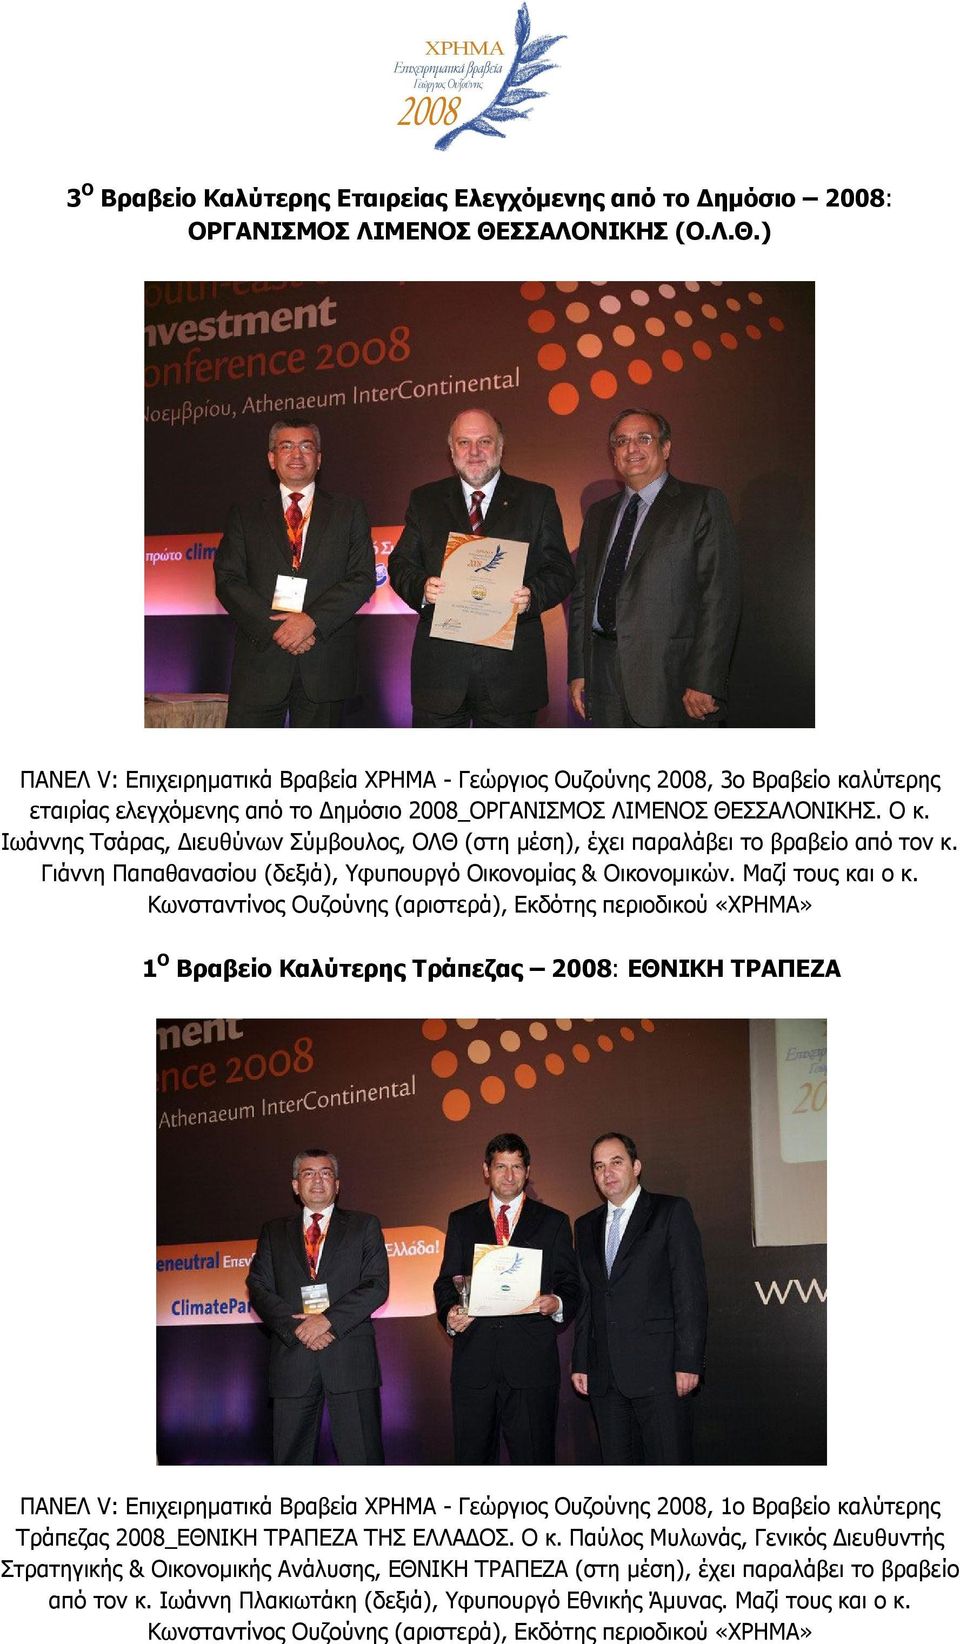 Ιωάννης Τσάρας, Διευθύνων Σύμβουλος, ΟΛΘ (στη μέση), έχει παραλάβει το βραβείο από τον κ. Γιάννη Παπαθανασίου (δεξιά), Υφυπουργό Οικονομίας & Οικονομικών. Μαζί τους και ο κ.